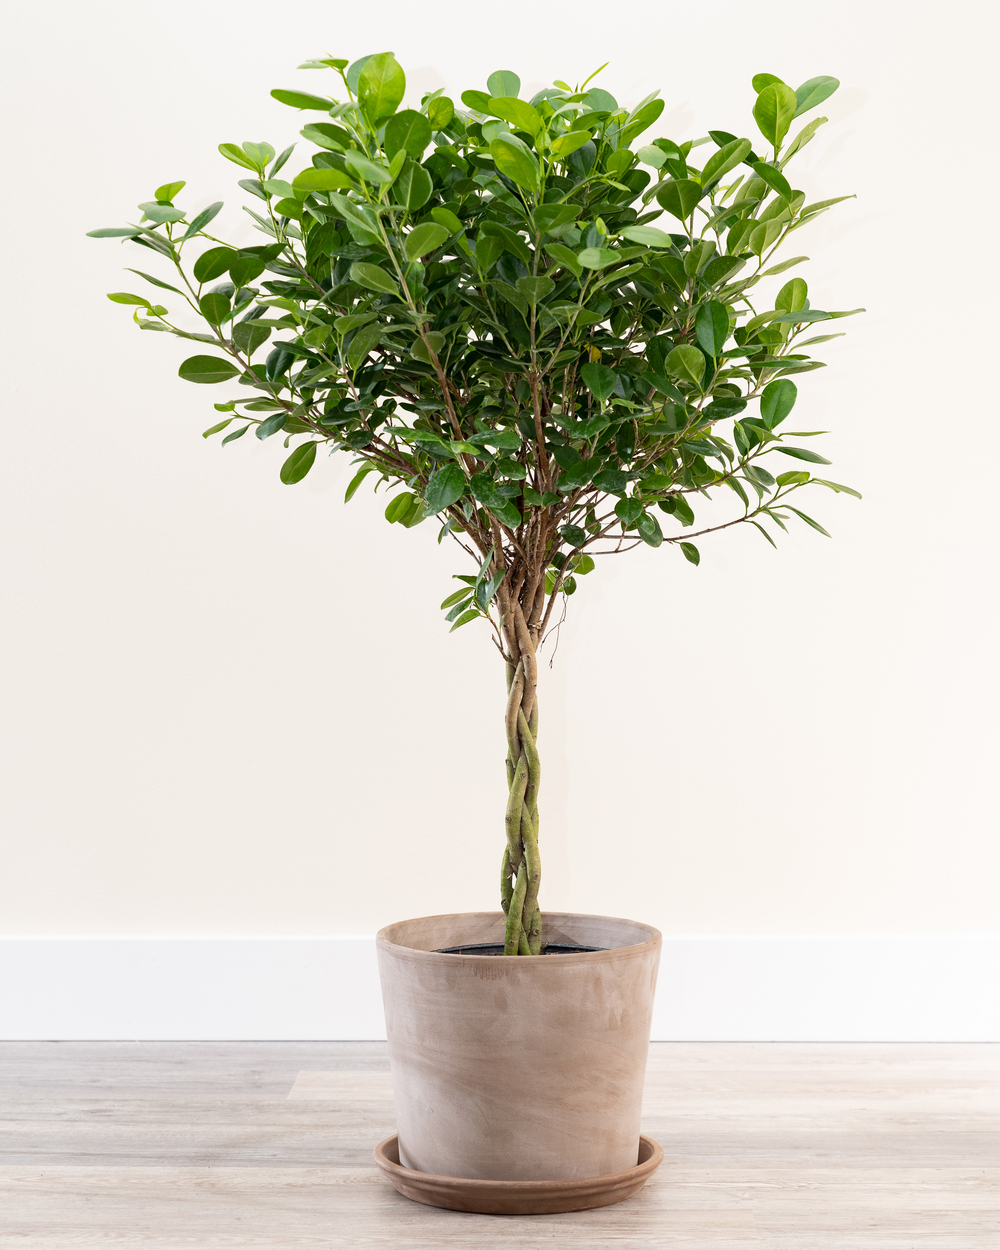 Ficus plant indoor care